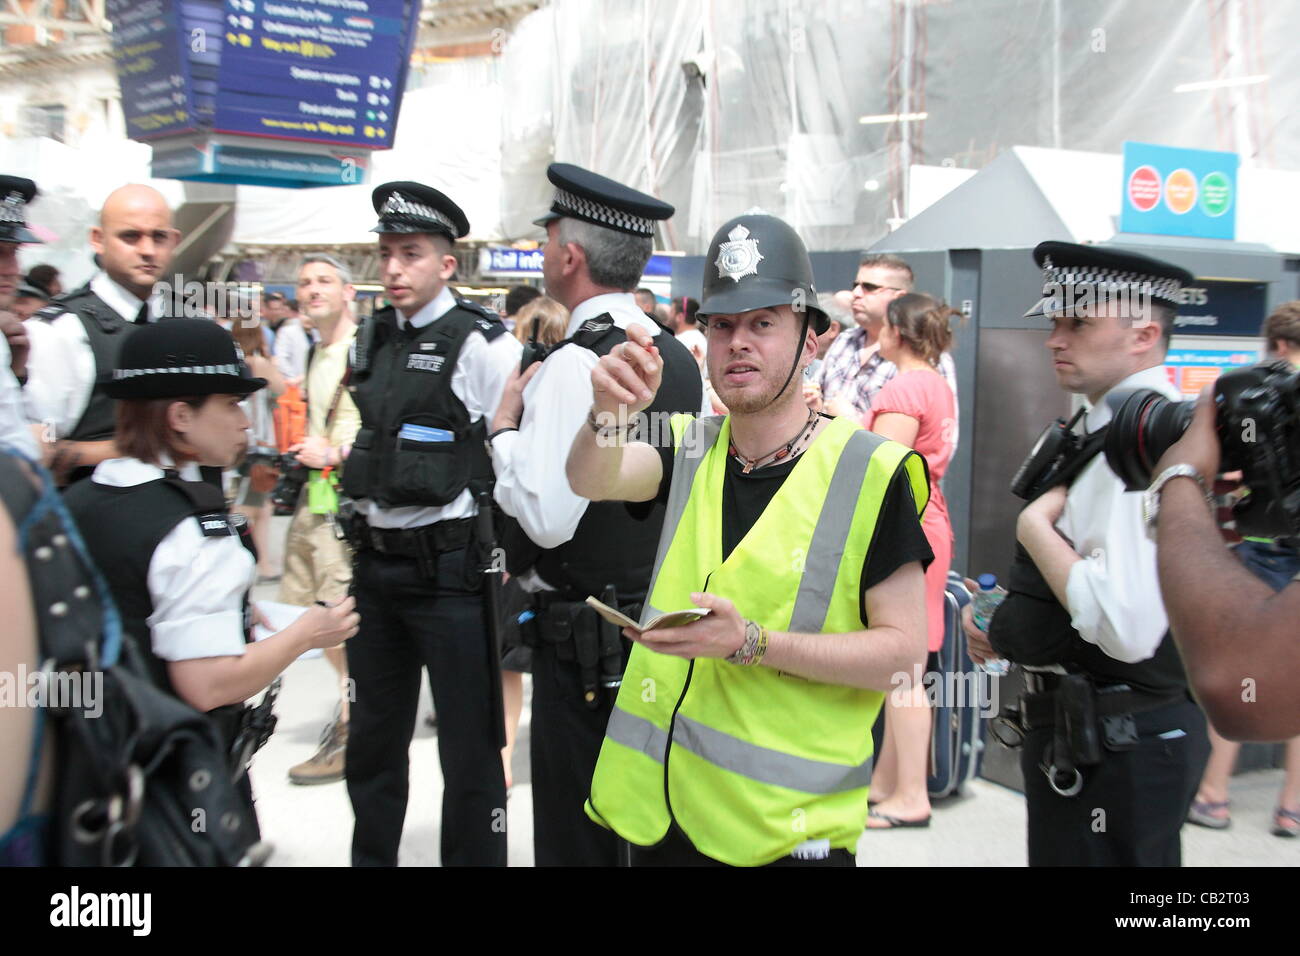 Samstag, 26. Mai 2012 UKUncut Gruppe treffen sich an der Waterloo Station in London vor der Fahrt zum Zielort SW London. Kreditrahmen: Kredit: HOT SHOTS / Alamy Live News Stockfoto